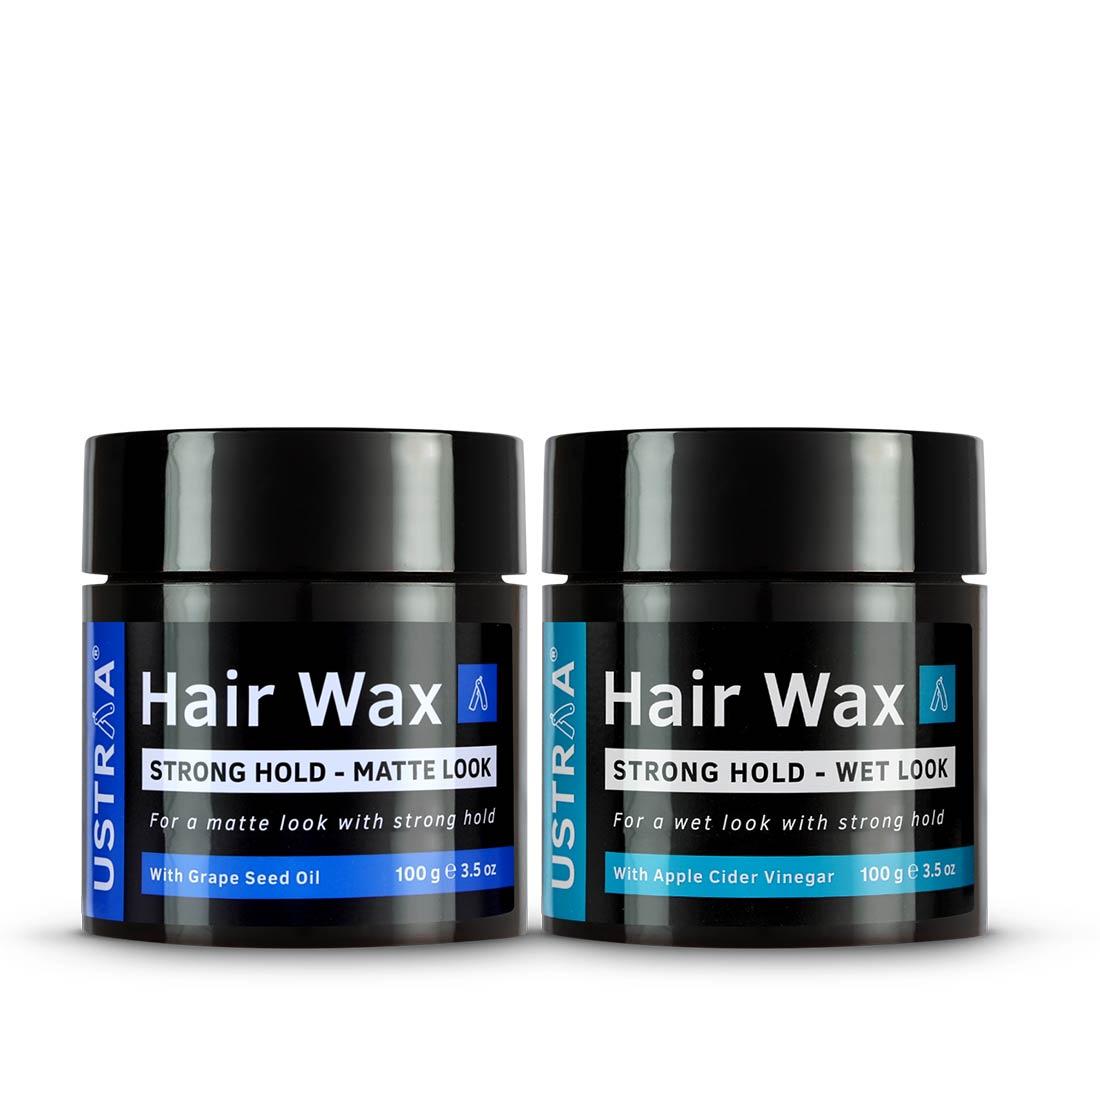 Ustraa Hair Wax Combo For Men: Wet Look + Matte Look (Set of 2)